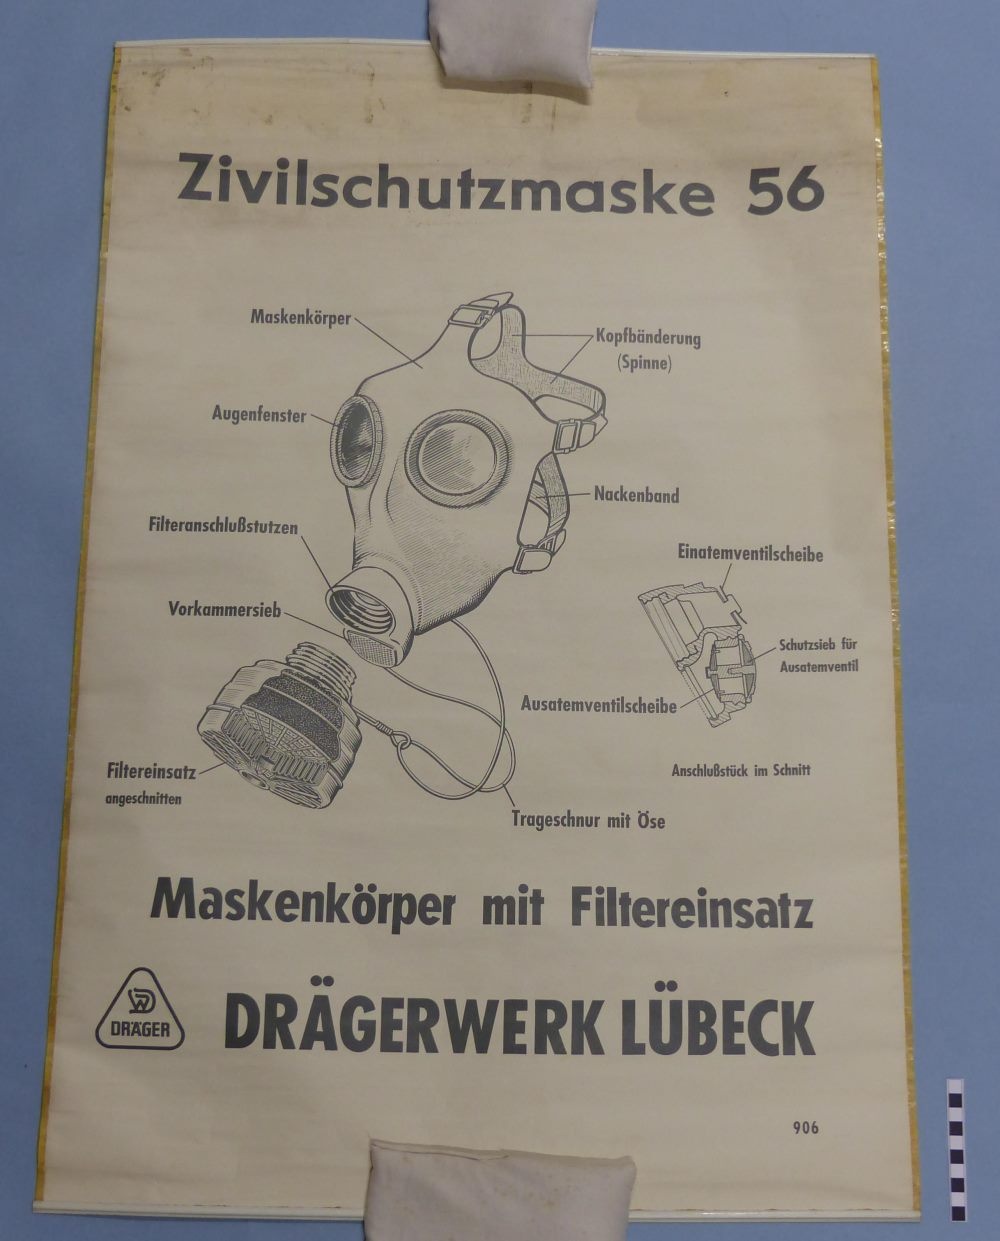 Zivilschutzmaske 56 (Mindener Museum CC BY-NC-SA)